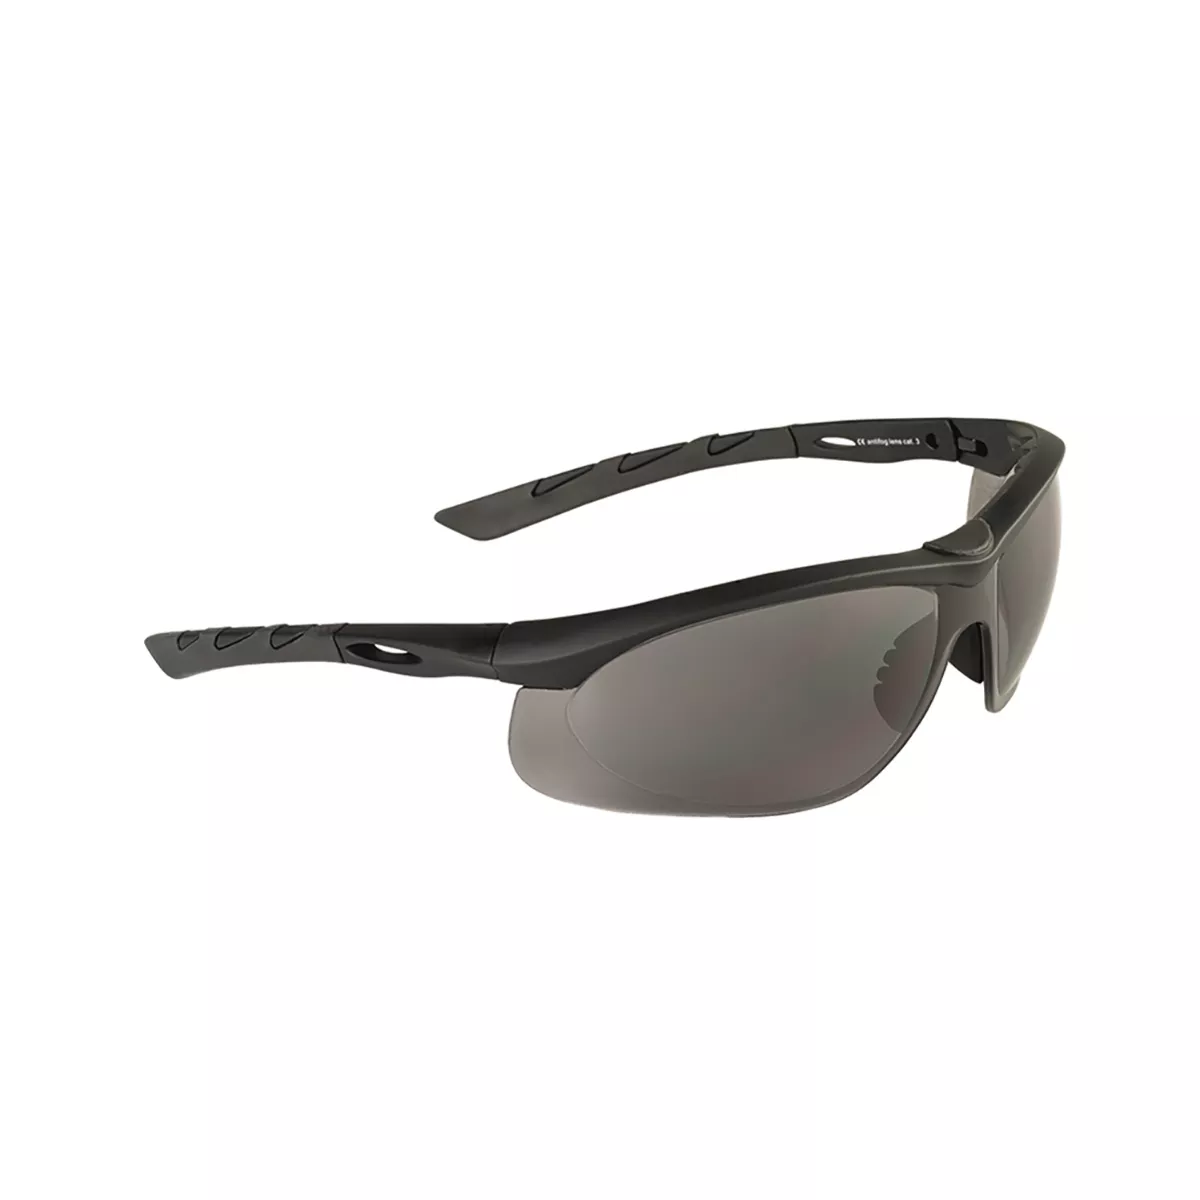 Brille BOLLÉ® MERCURO CSP GRAU/SCHWARZ Schutzbrille Sonnenbrille Sport Tact 